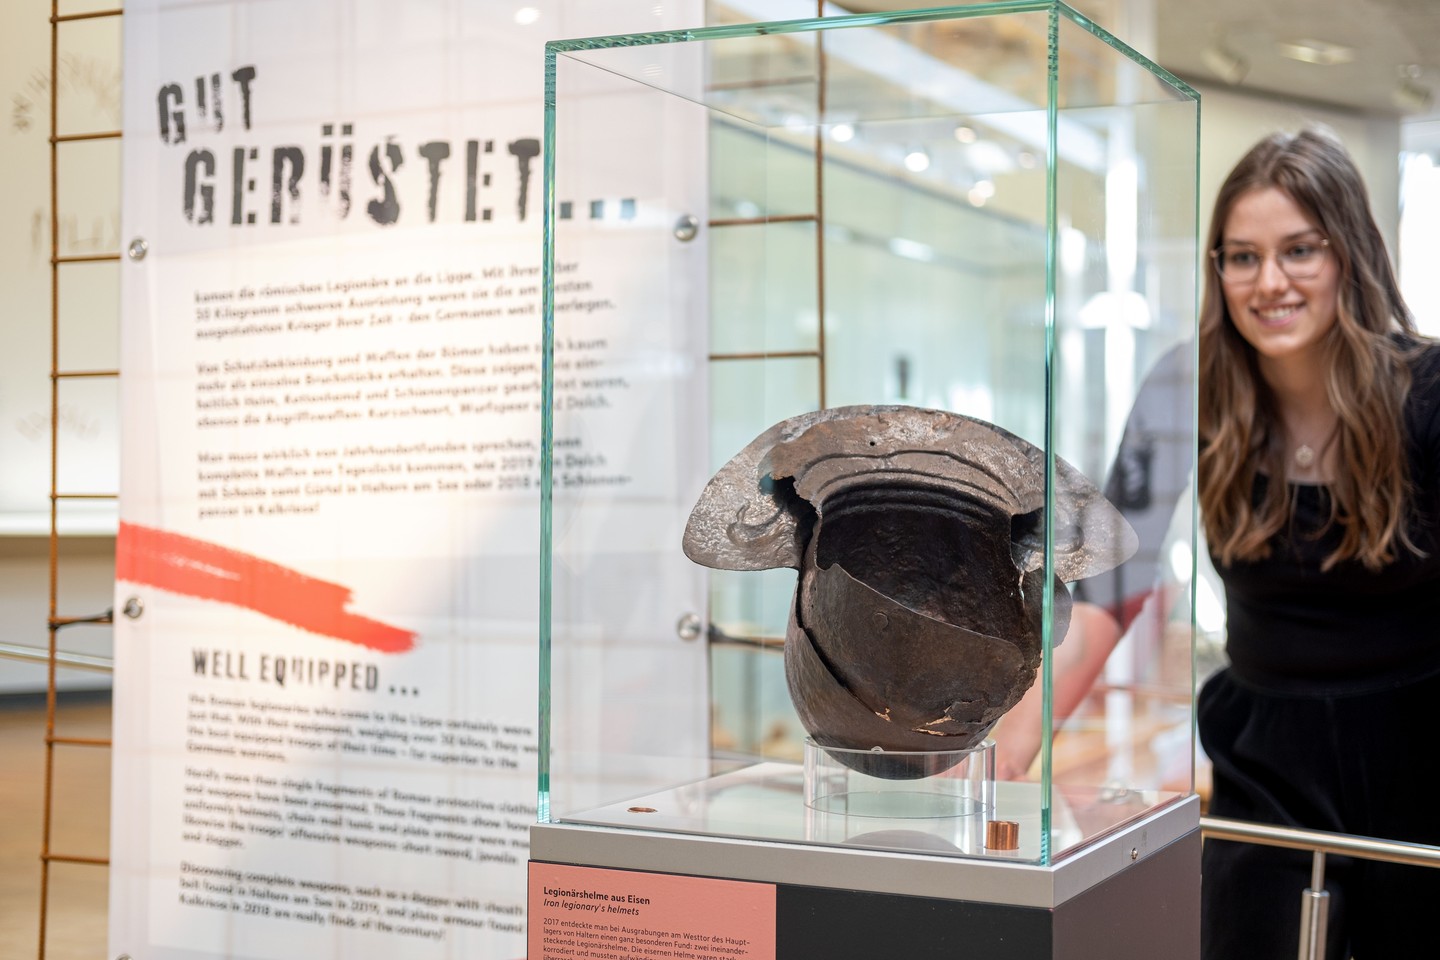 Römerhelme aus Haltern, eines der Highlights der Landesausstellung im LWL-Römermuseum